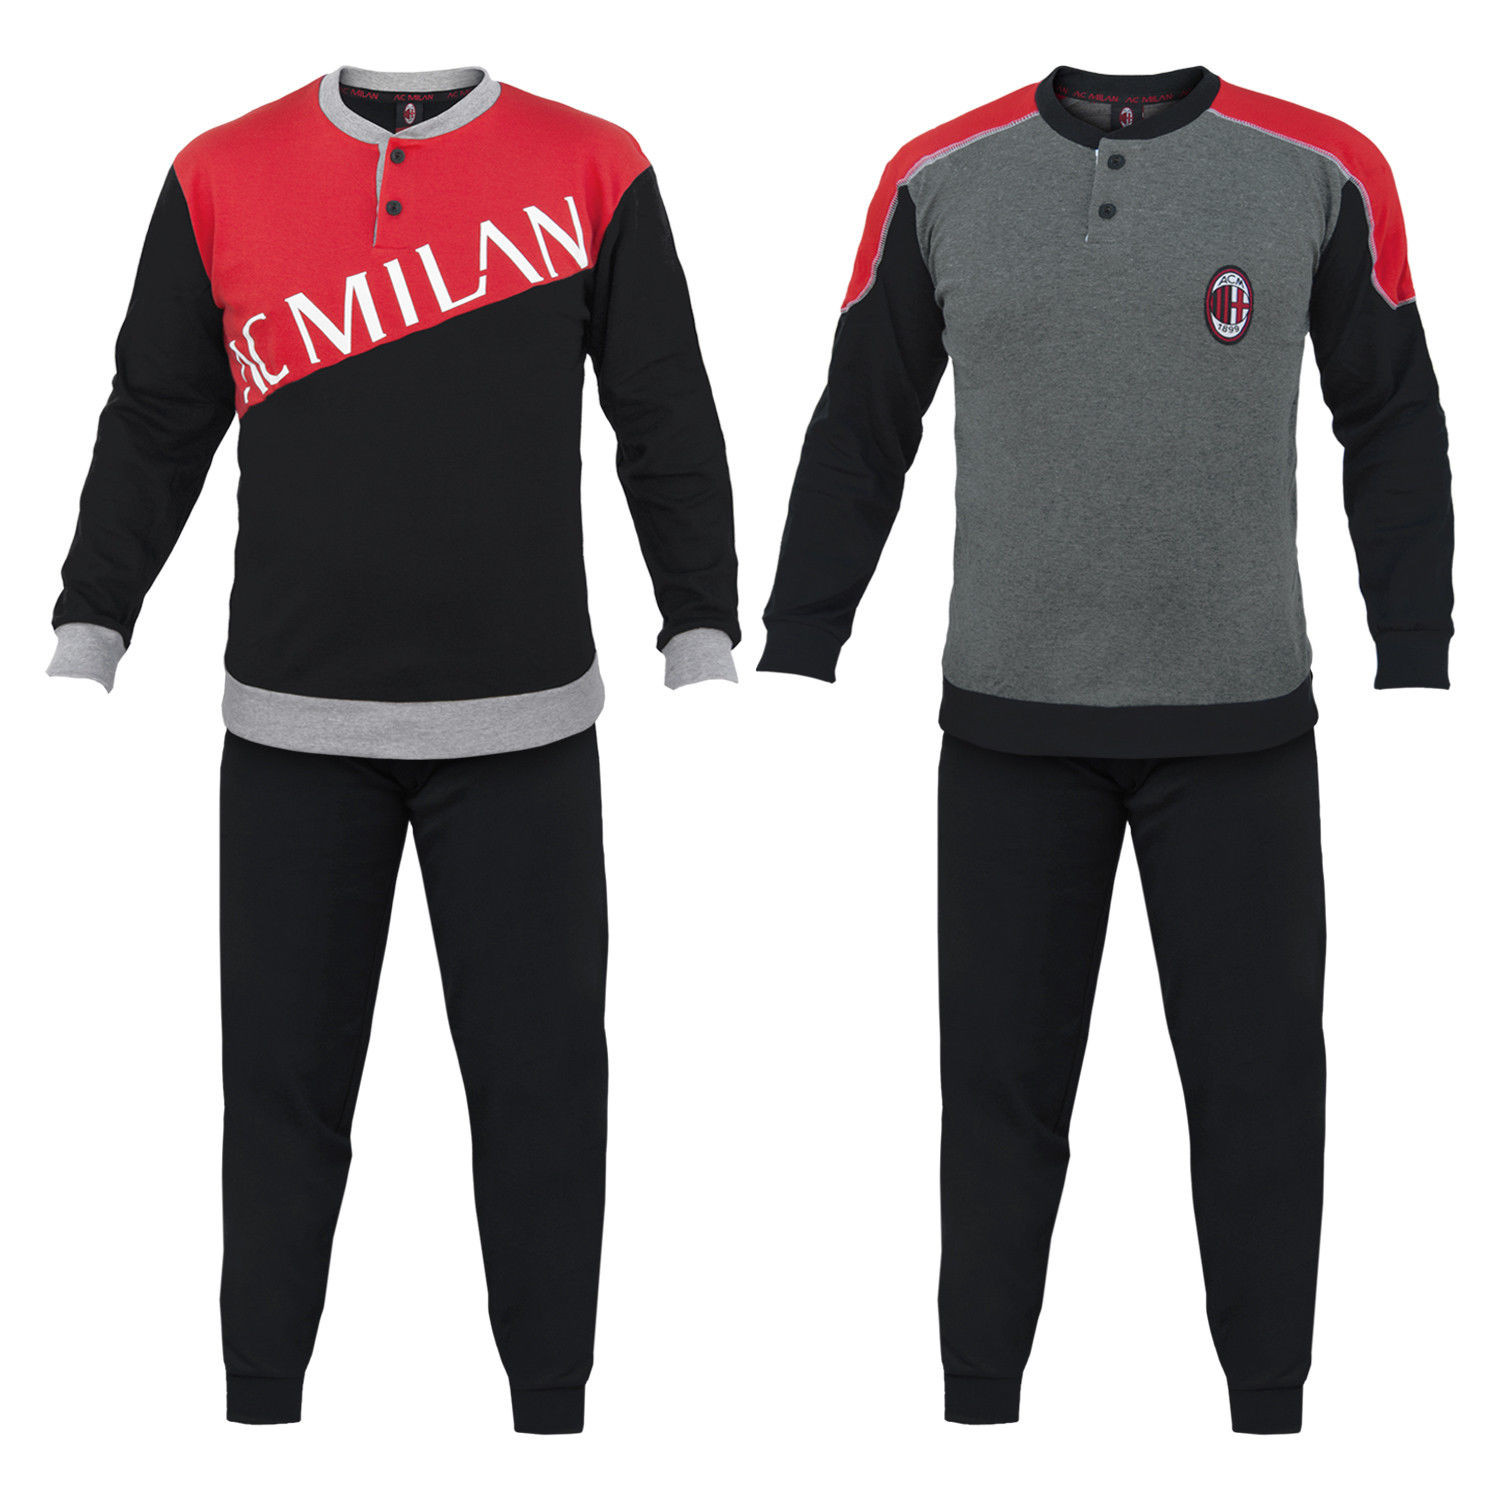 Pigiama Milan Abbigliamento Ufficiale AC Milan PS 25650 Pigiami Calcio Ragazzo Pelusciamo Store Marchirolo